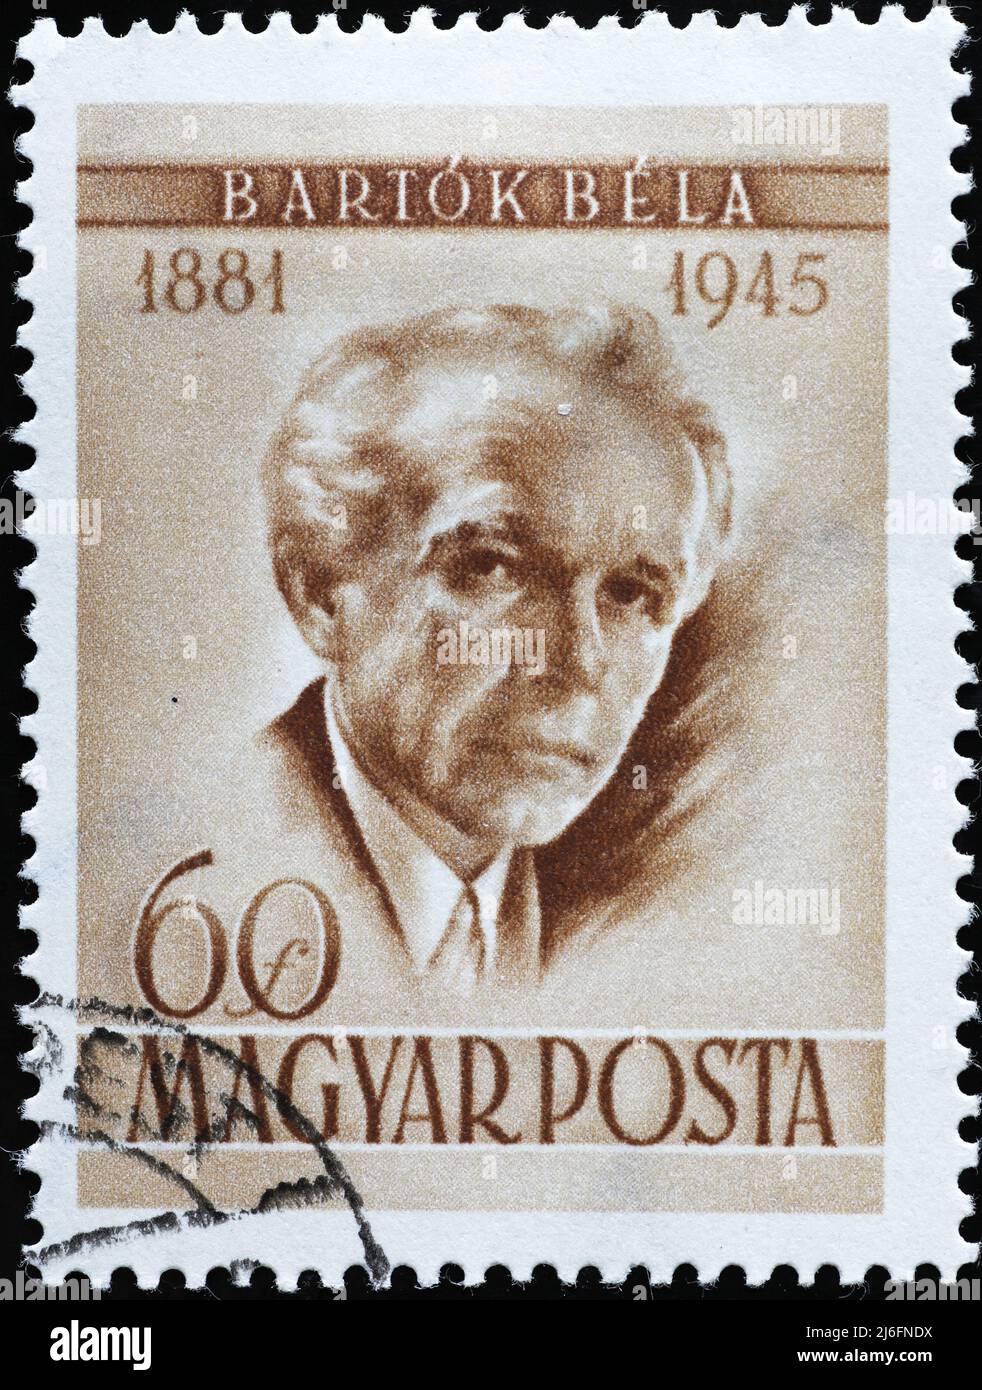 Portrait de Bela Bartok sur timbre hongrois Banque D'Images